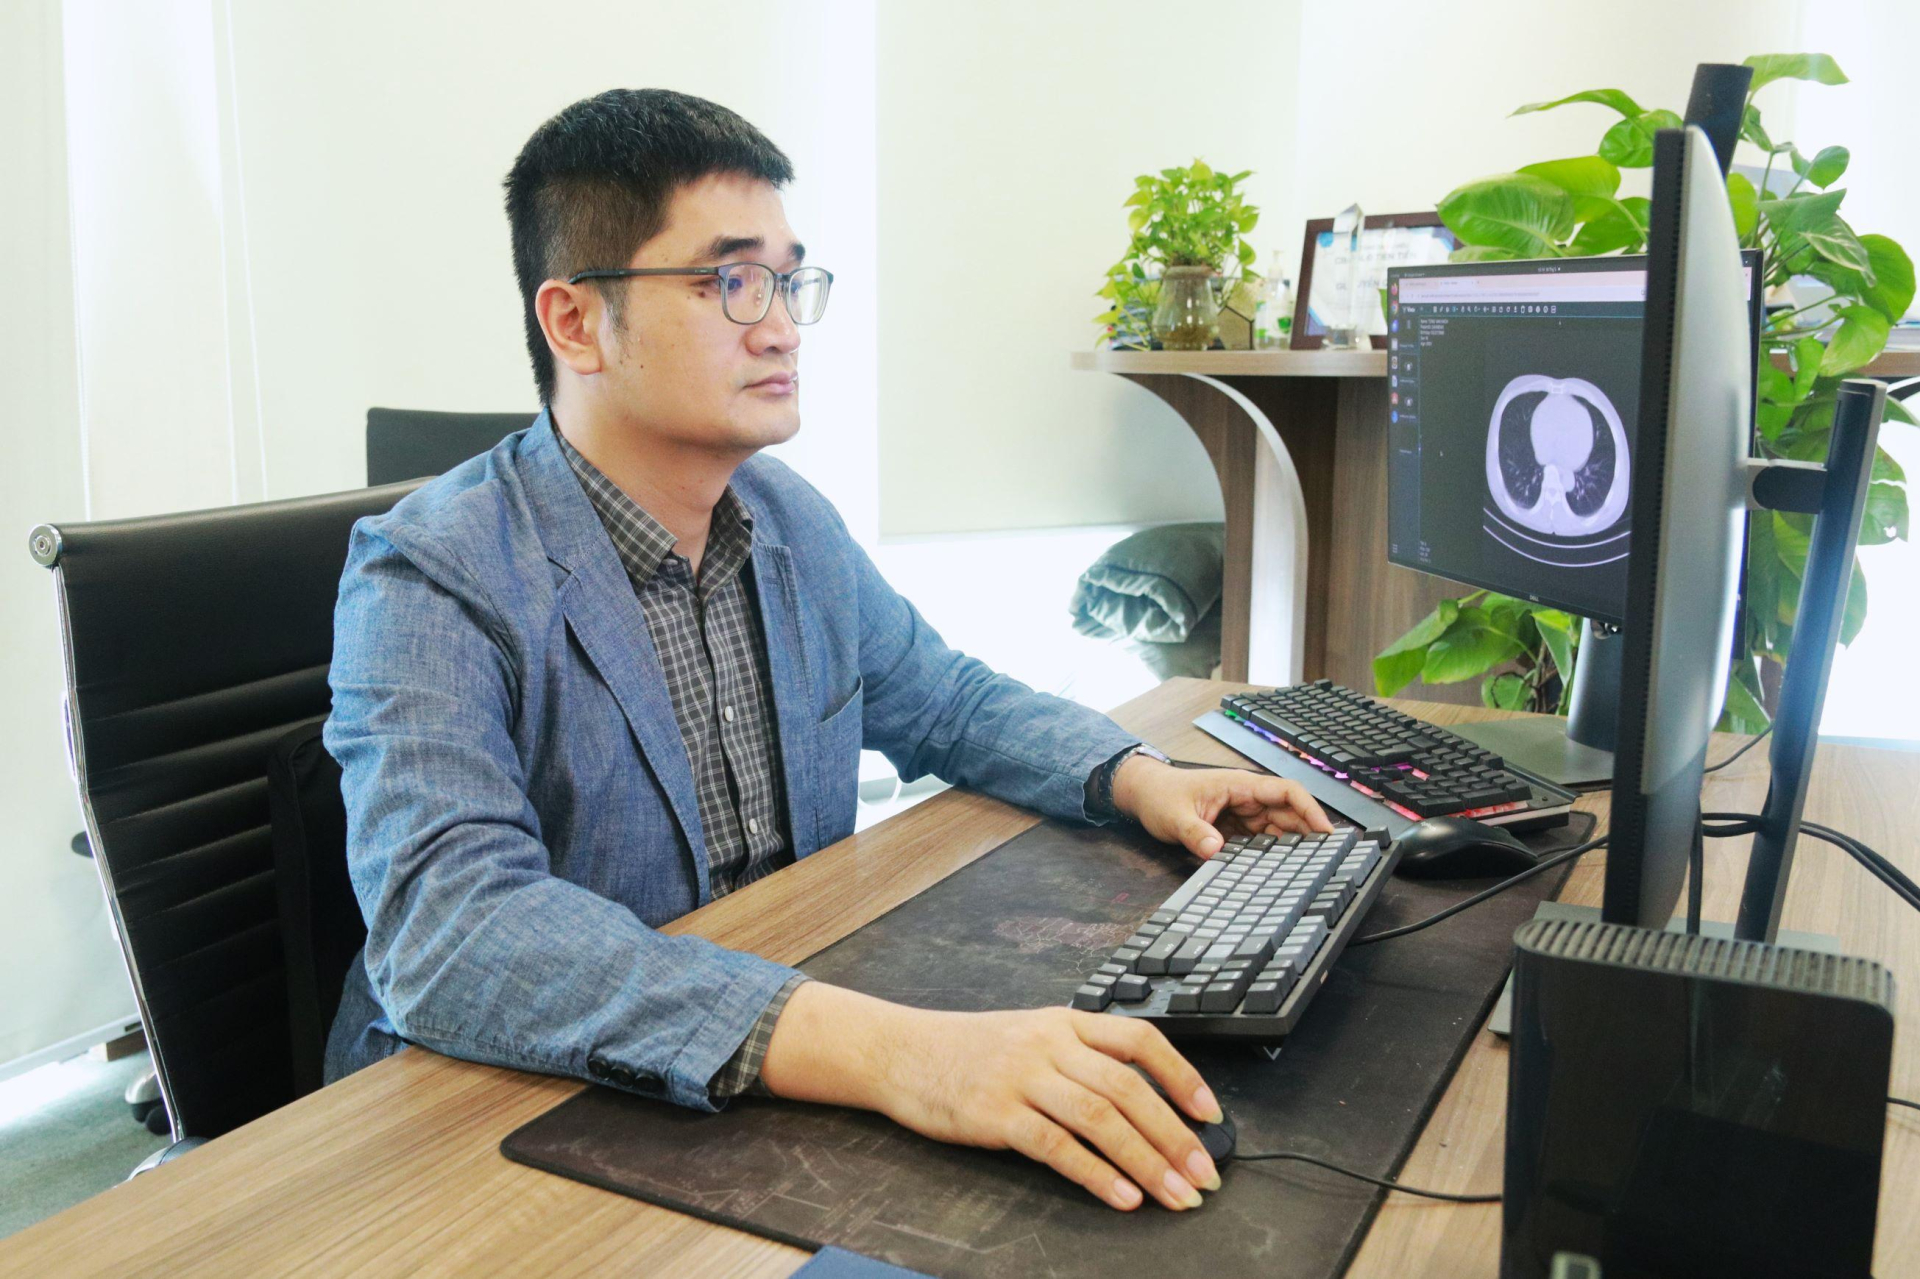 TS. Nguyễn Quý Hà - Giám đốc Khối Công nghệ Phân tích hình ảnh VinBigdata chia sẻ, chứng nhận của FDA sẽ mở ra cánh cửa để VinBigdata tiến ra toàn cầu, góp phần khẳng định vị thế của Việt Nam trên bản đồ trí tuệ nhân tạo thế giới.